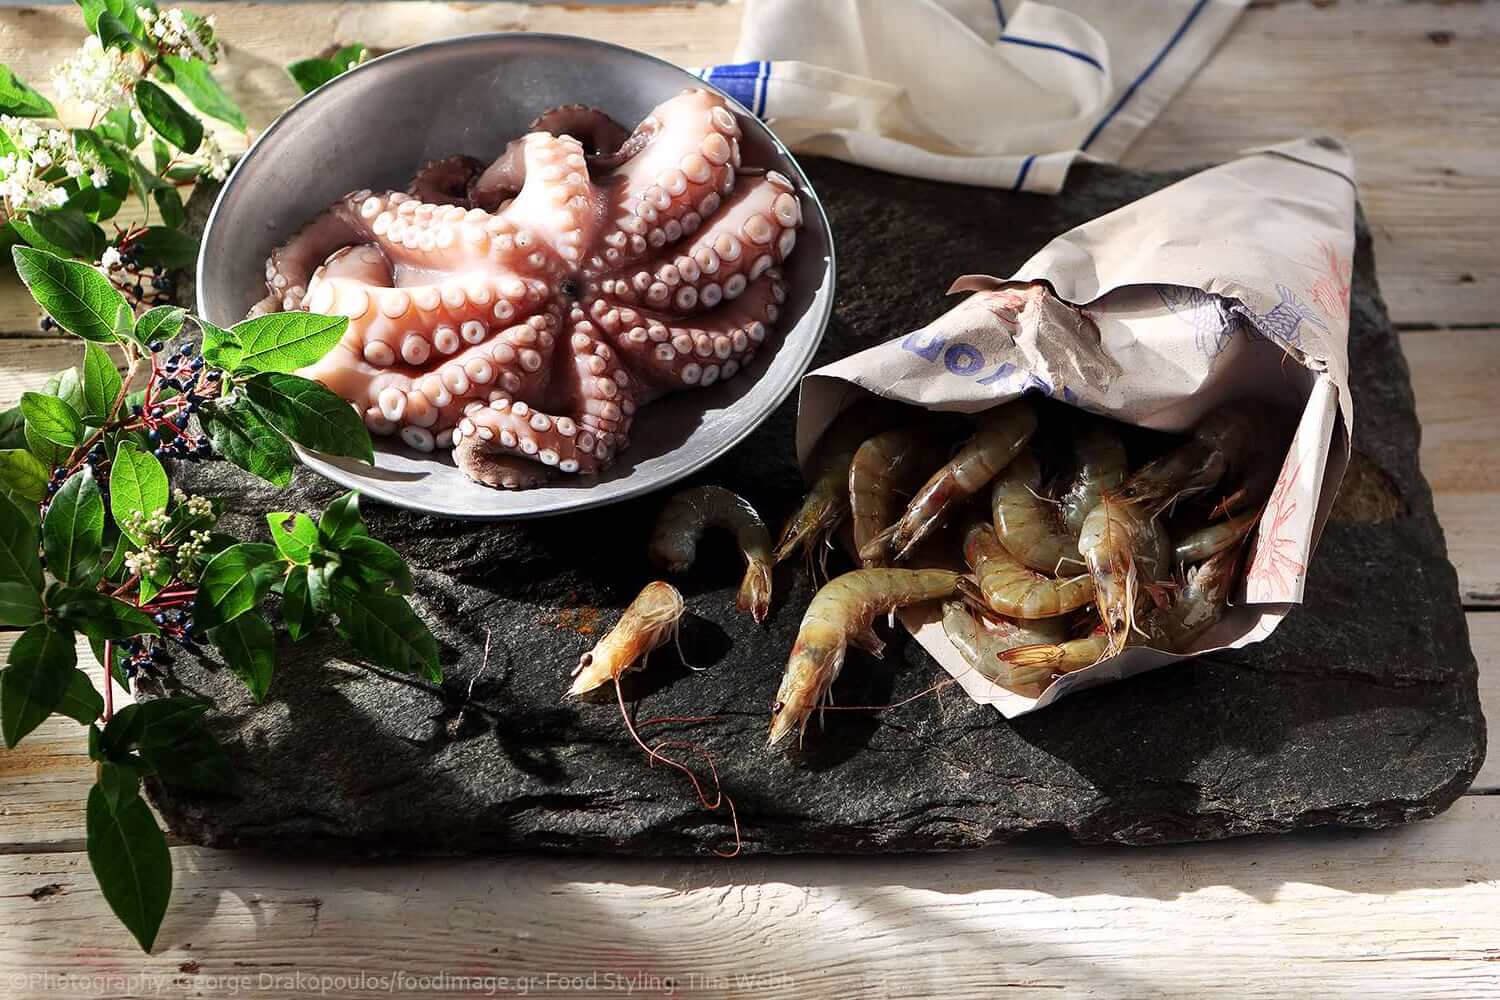 μυστικά για θαλασσινά συντηρηση μαγειρεμα αργυρω μπαρμπαριγου